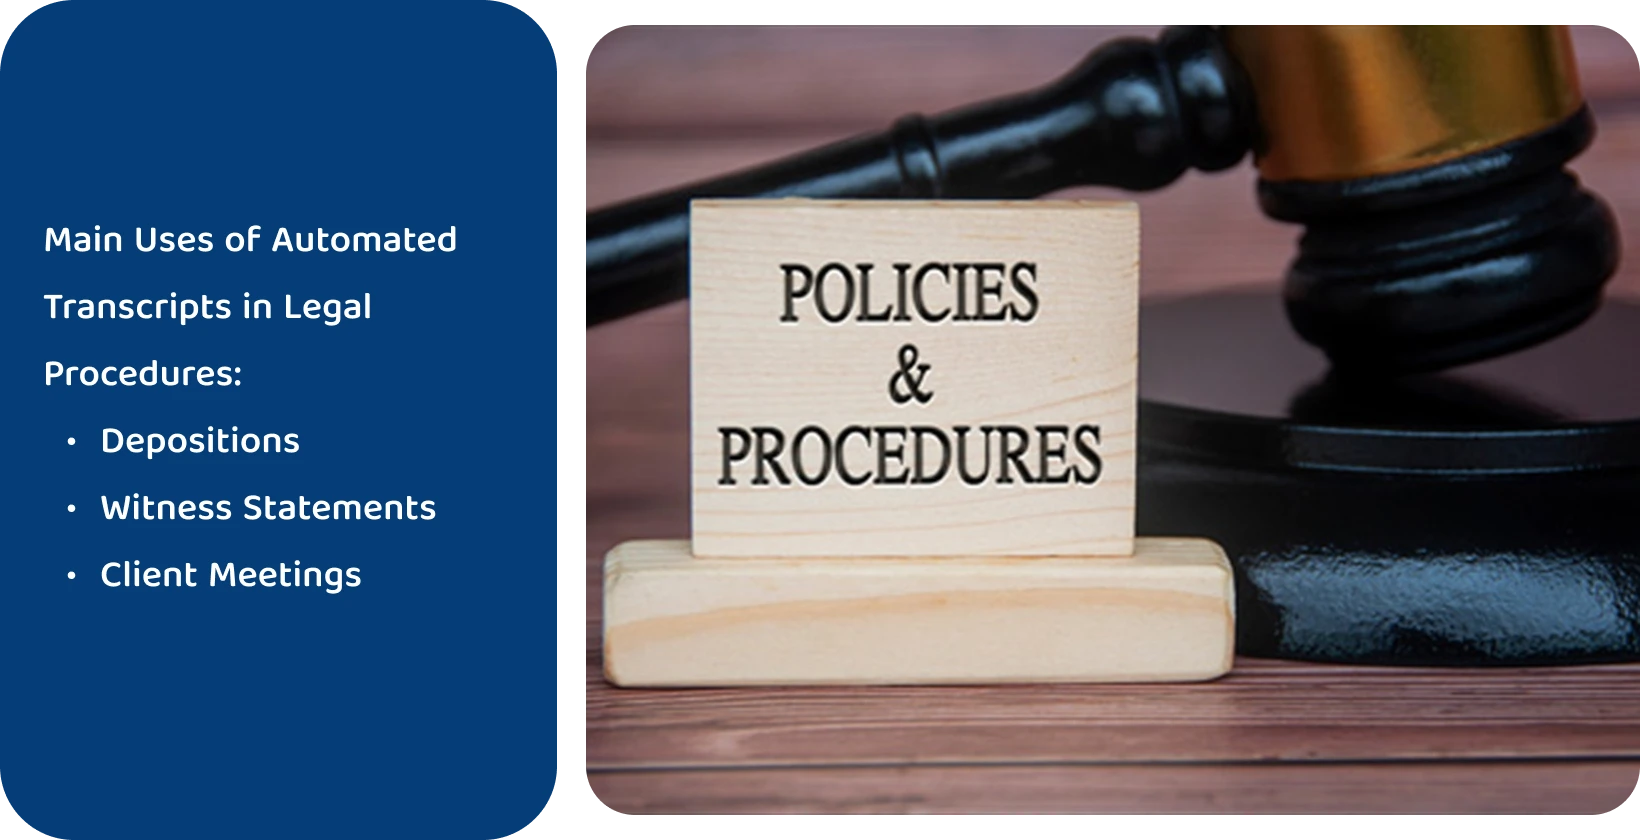 「Policies & Procedures」の看板の横の小槌は、自動文字起こしツールによって満たされた法的基準を表しています。